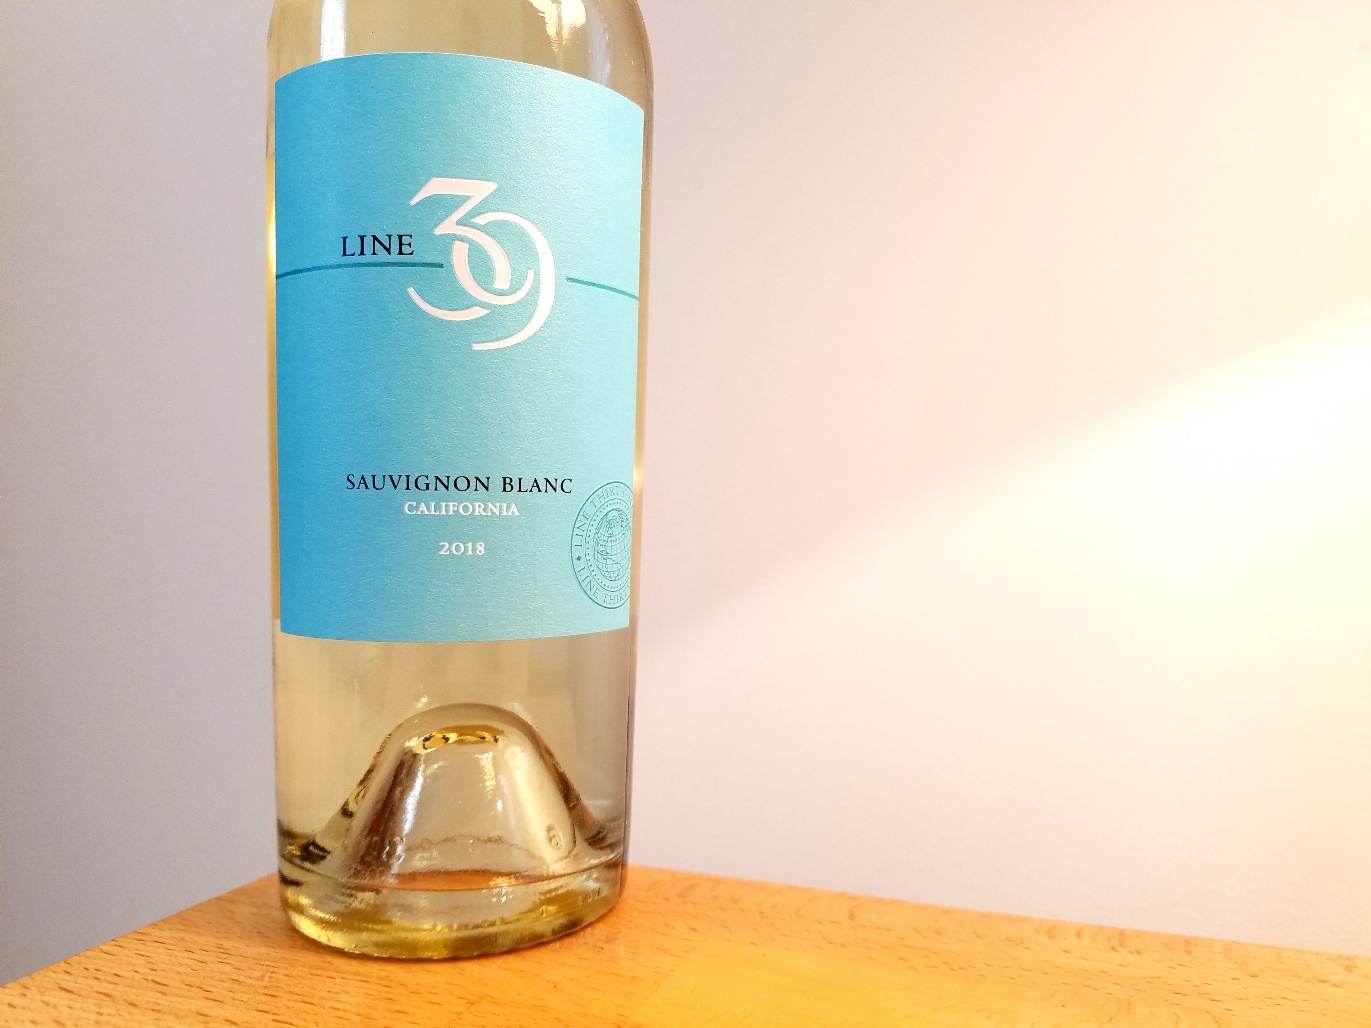 Line 39, Sauvignon Blanc 2018, California, Wine Casual